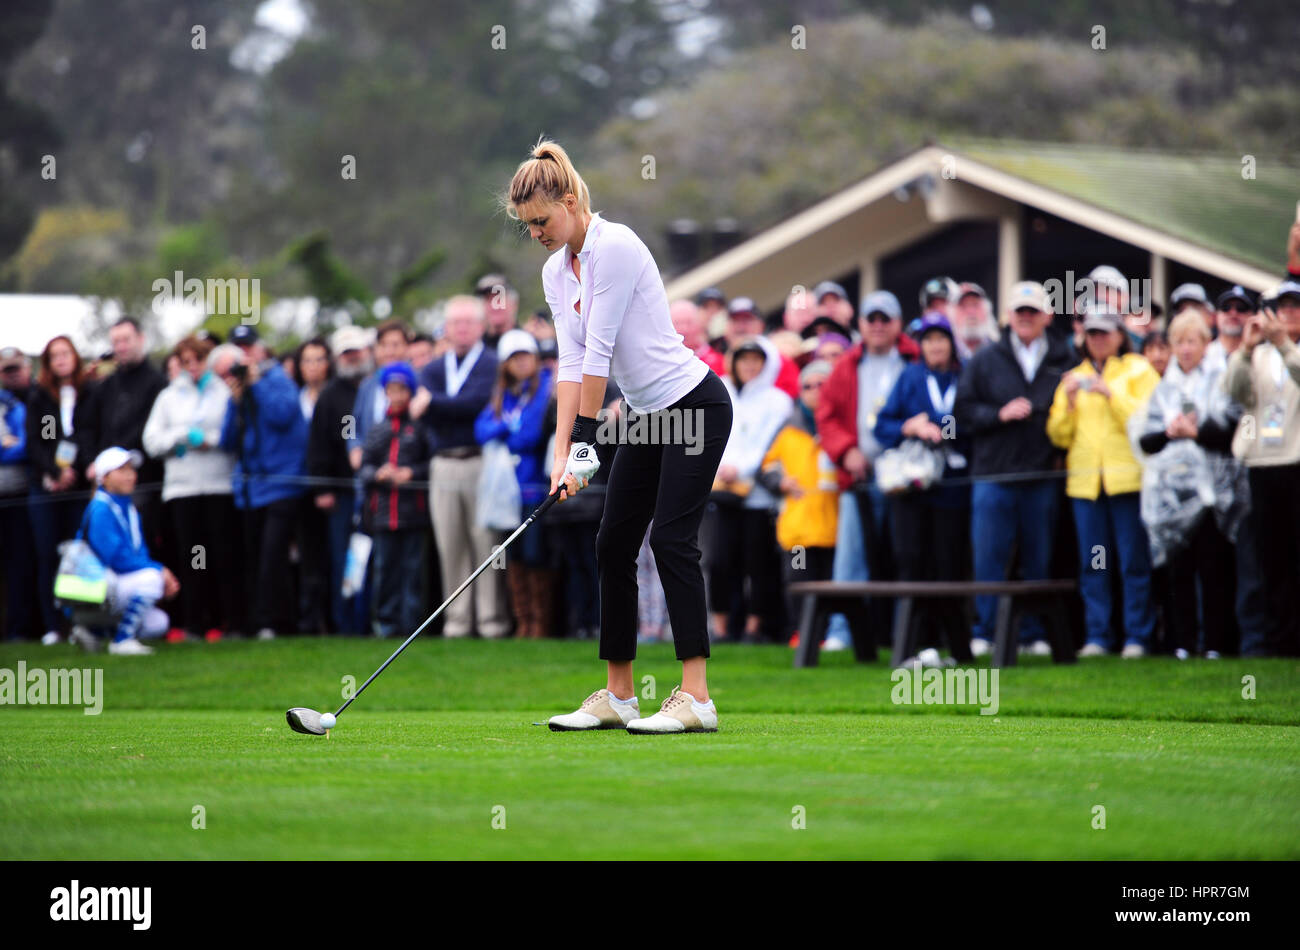 Kelly modèle Rohrbach tees au cours de l'AT&T Pebble Beach National Pro-Am Golf tournament Le 8 février 2017 à Monterey, Californie. Banque D'Images